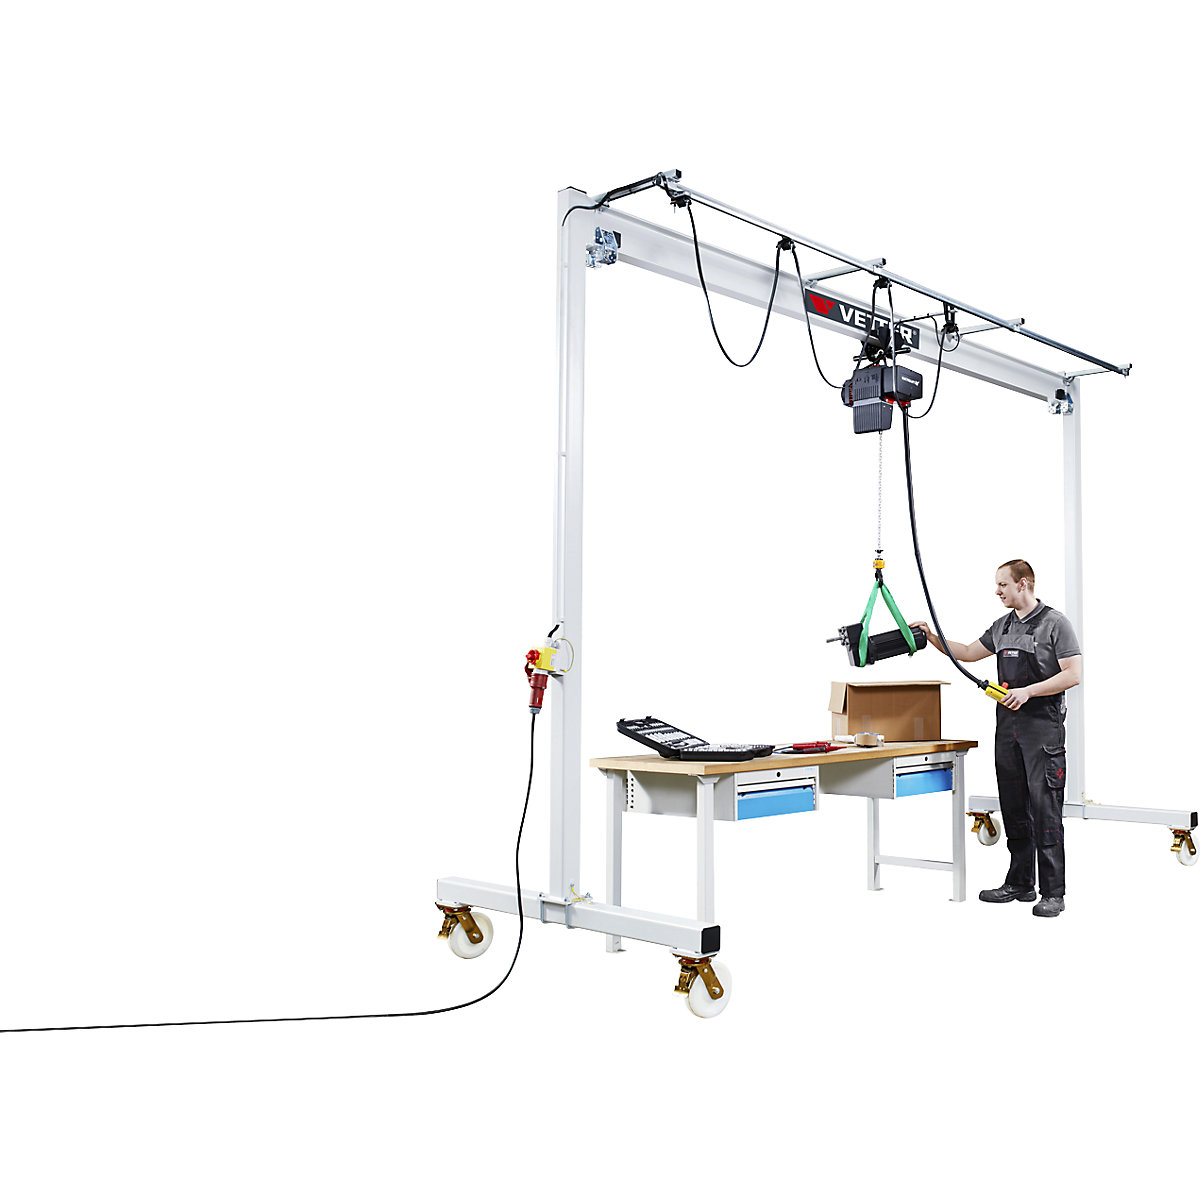 Steel mobile gantry crane PA – Vetter (Product illustration 12)-11